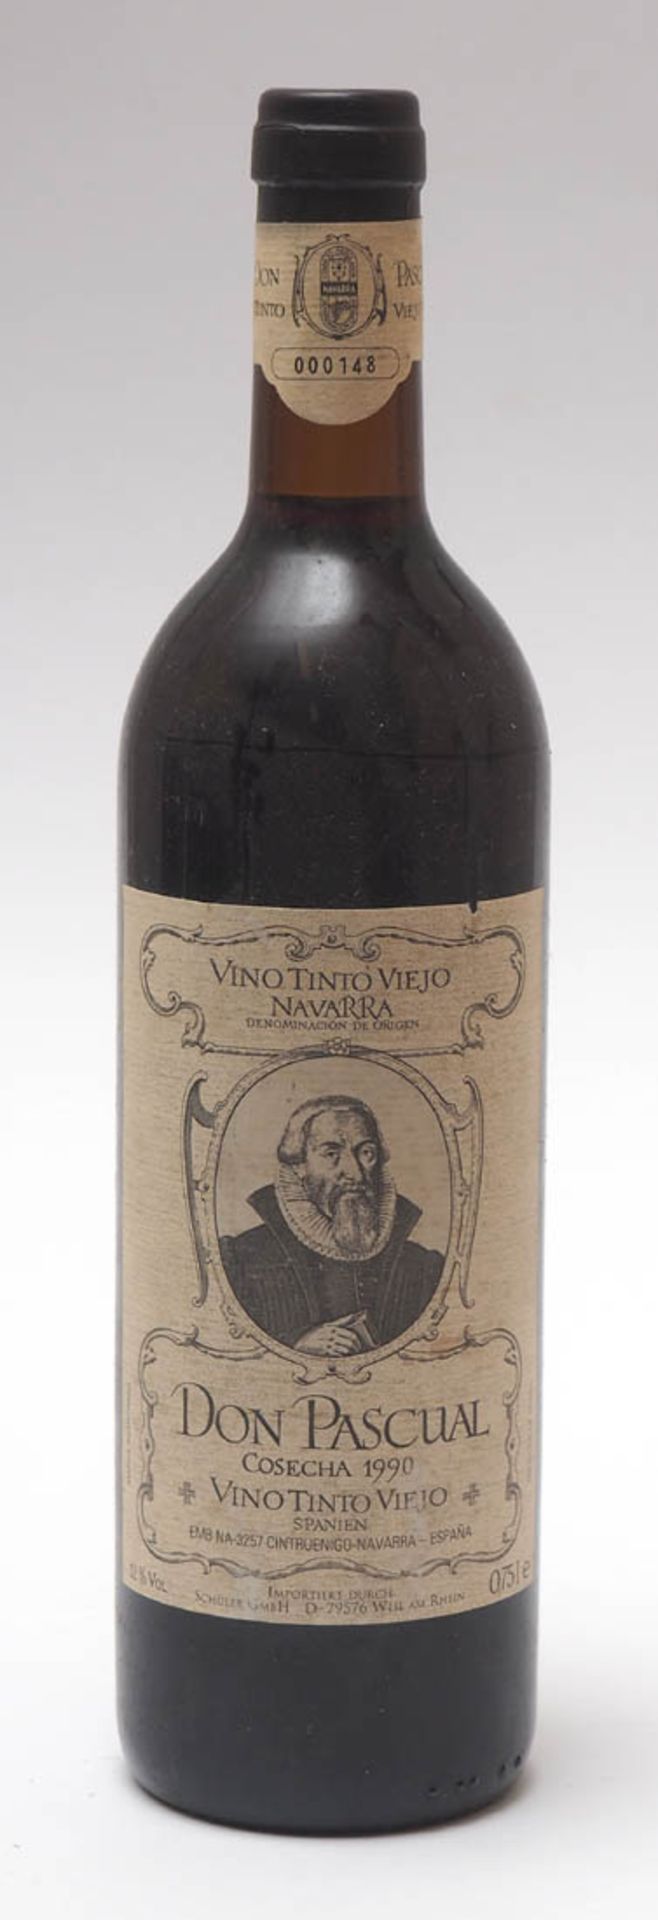 29 Flaschen spanischer Rotwein Don Pascual, Vino tinto, Viejo Navarra 1990